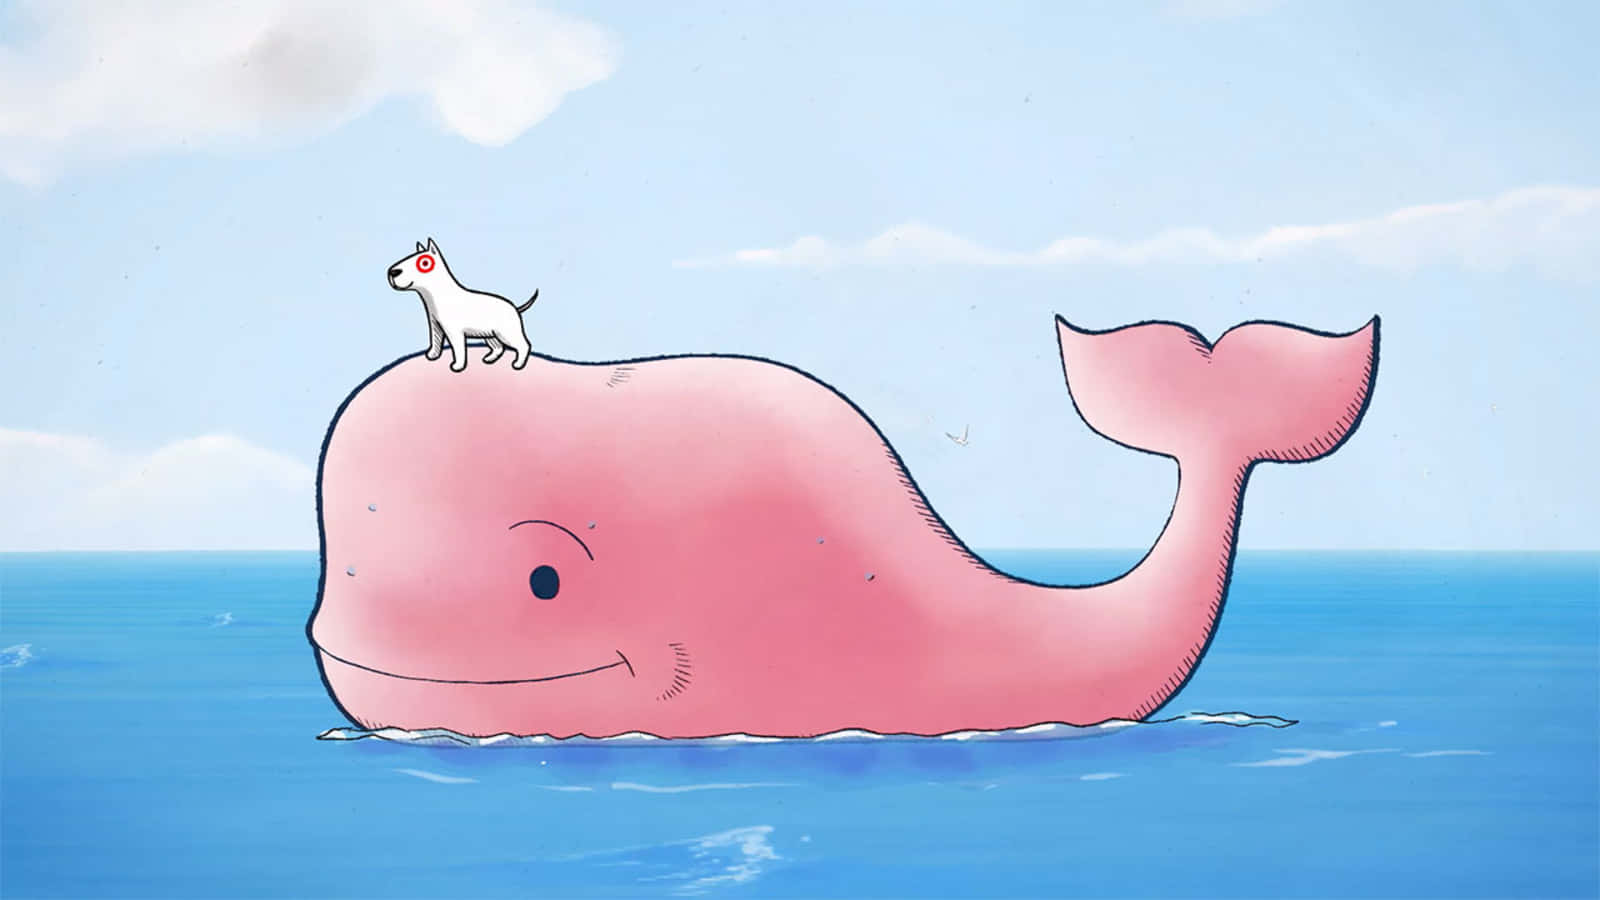 En lyserød hval med en hund øverst, der svømmer gennem himlen. Wallpaper